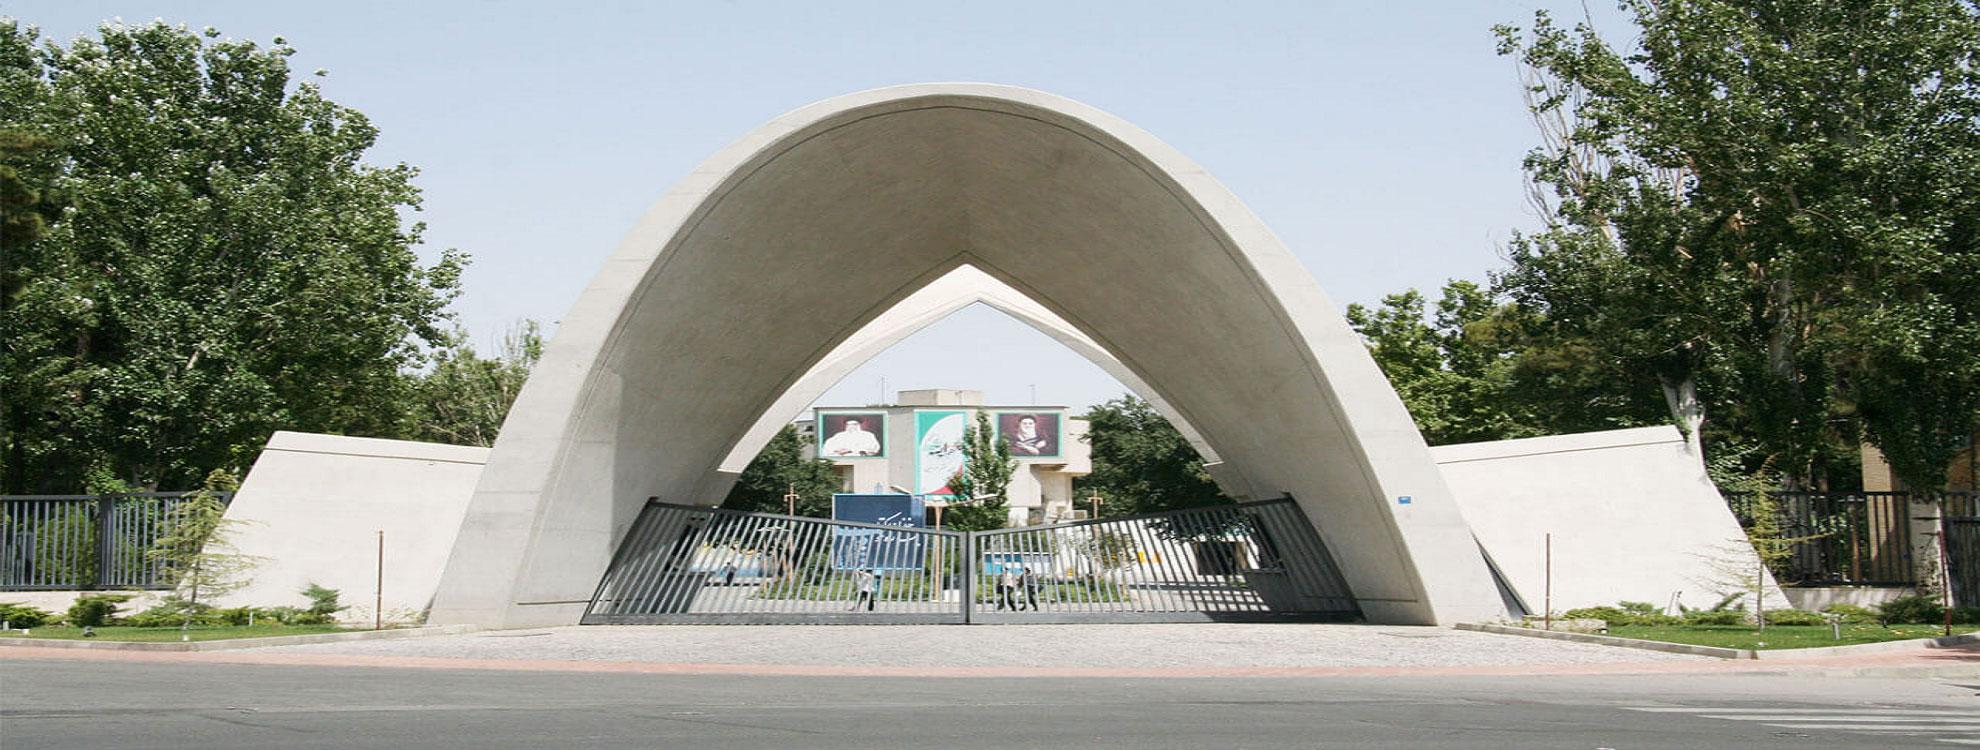 فراخوان جذب پژوهشگر پسادکتری دانشگاه علم و صنعت ایران 1402